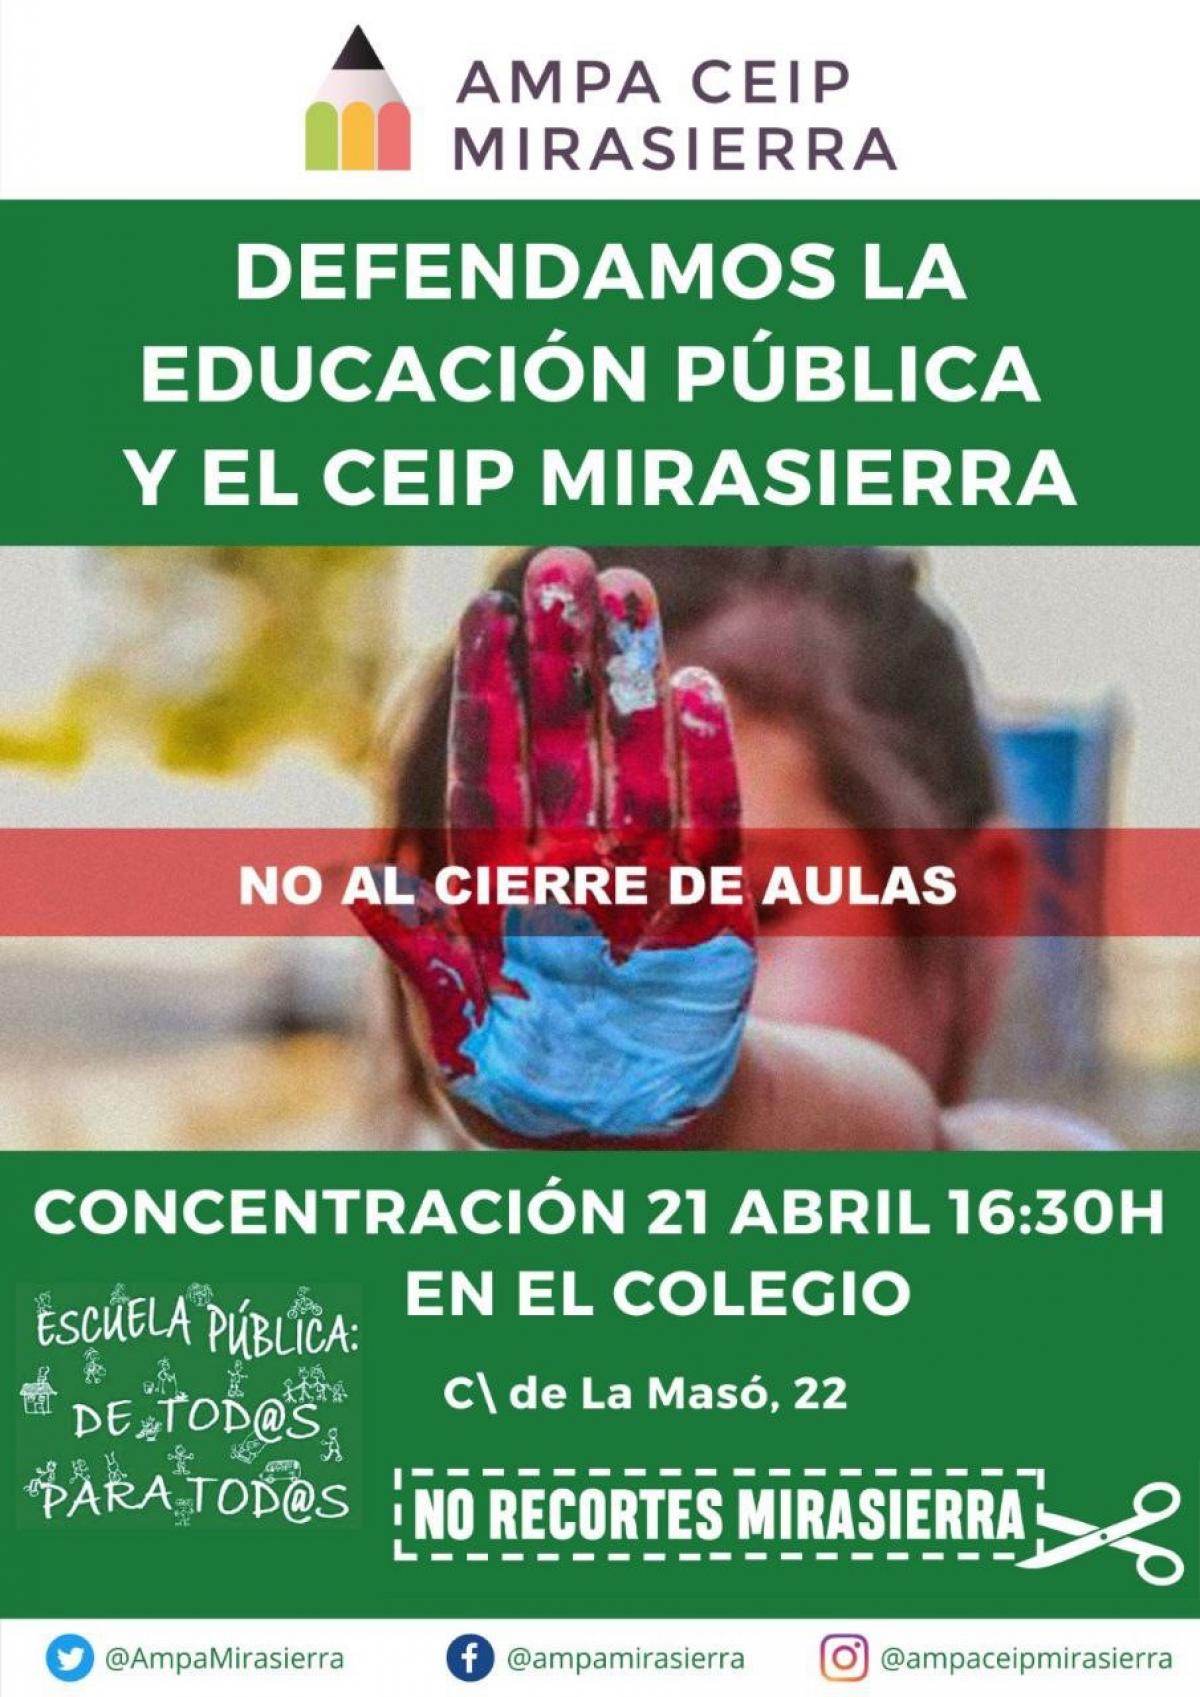 Defendamos la educación pública y el CEIP Mirasierra